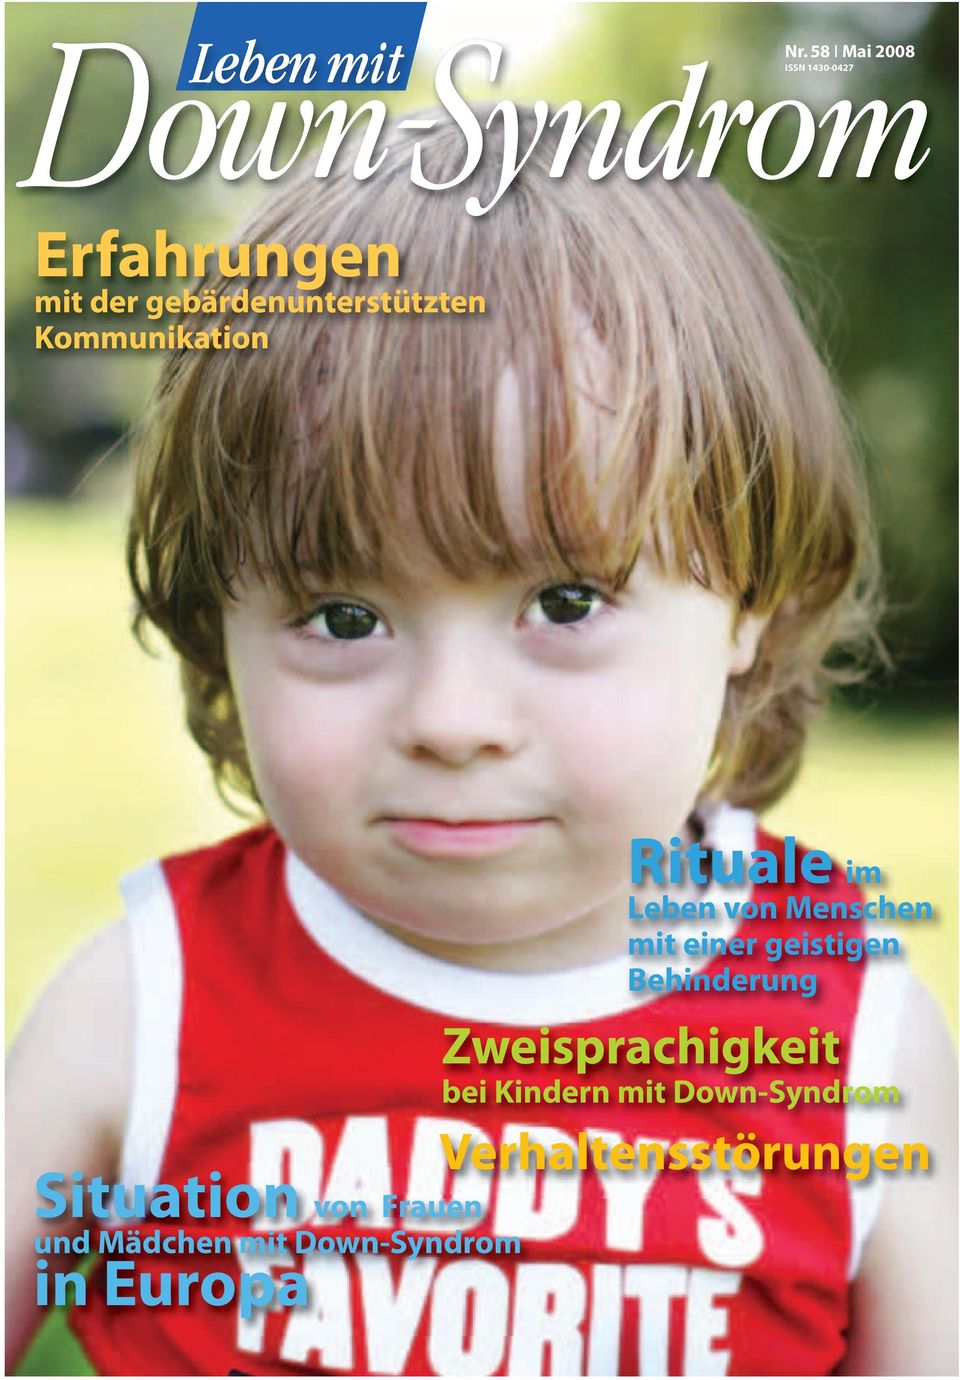 1430-0427 Situation von Frauen und Mädchen mit Down-Syndrom in Europa